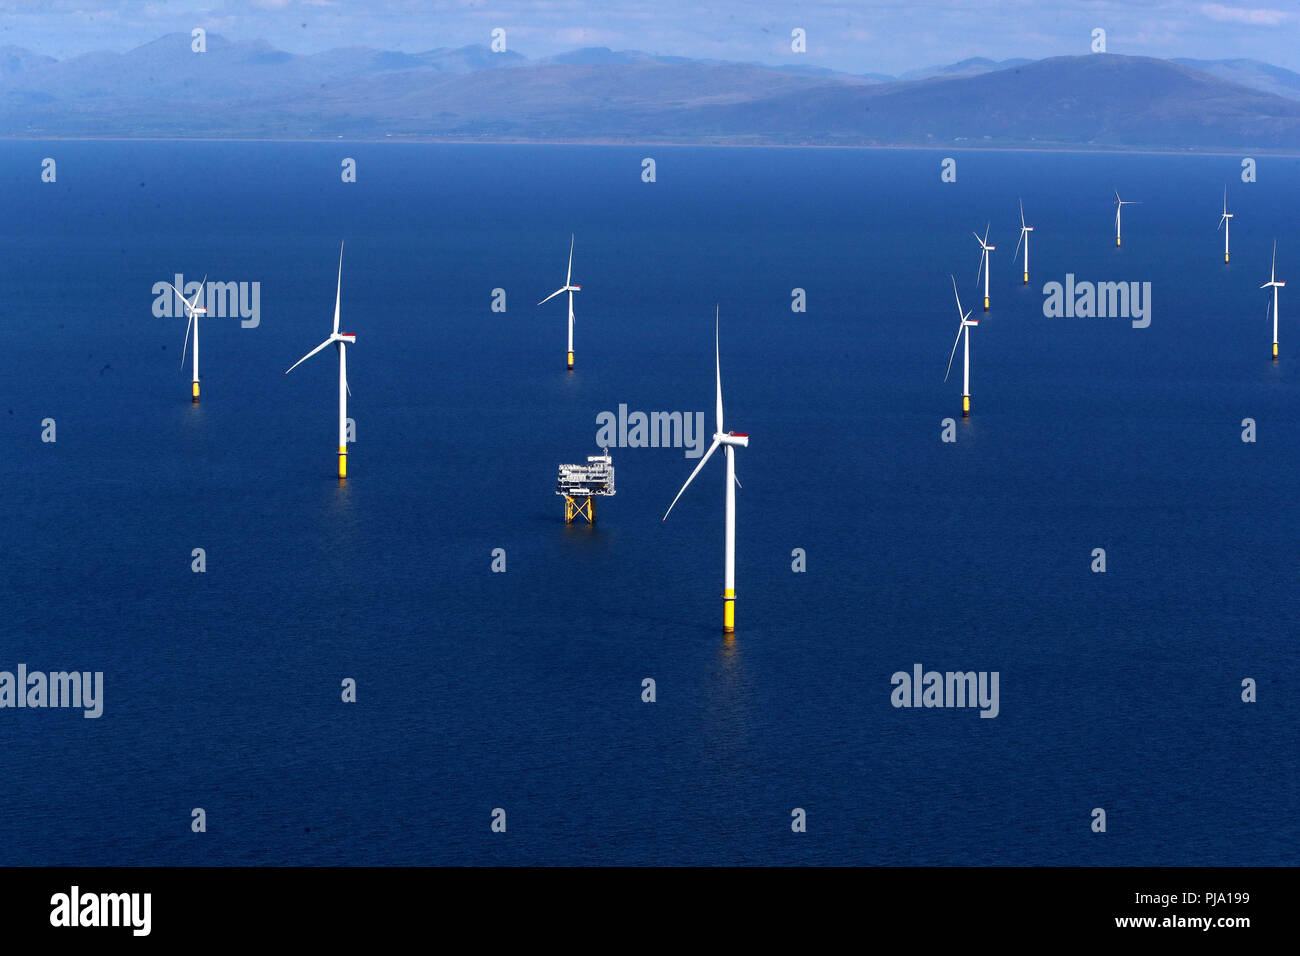 L'Extension Walney dans la mer d'Irlande, au large de la côte de Cumbria, le plus grand parc éolien offshore de travail qui a ouvert mercredi. Banque D'Images